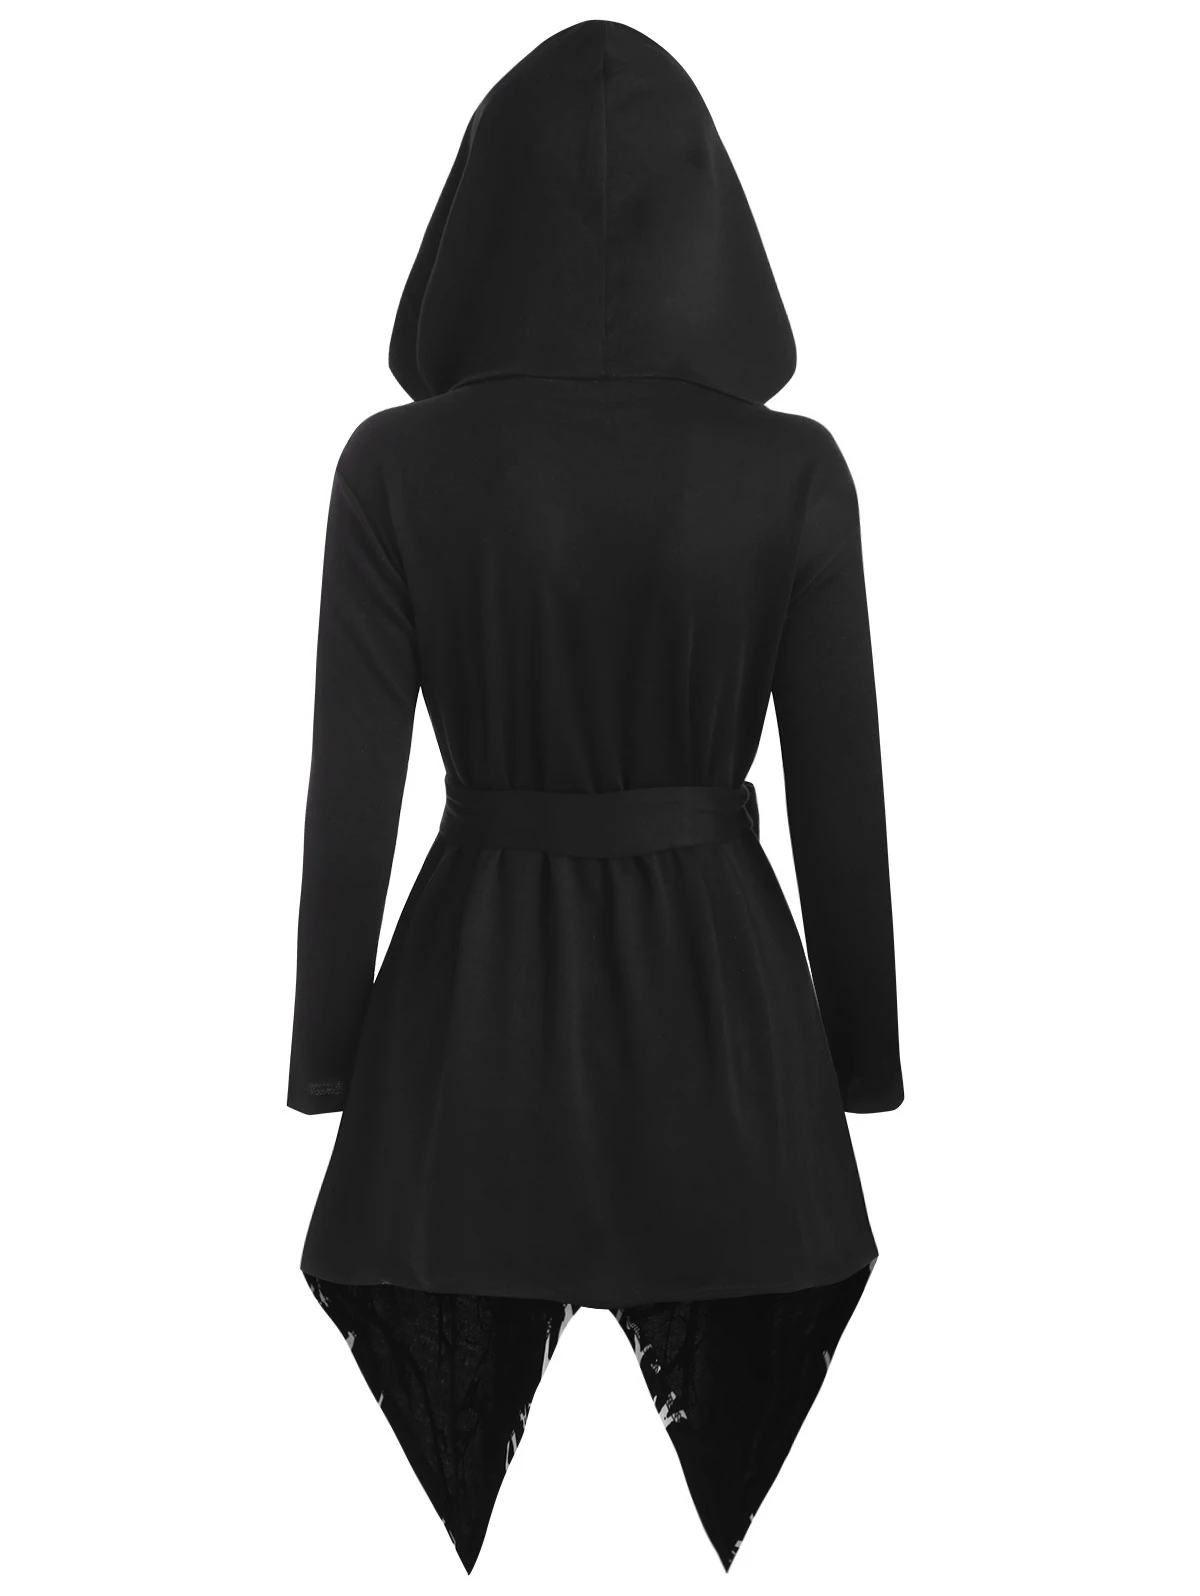 ROSEGAL 5XL, туника большого размера с принтом дерева, длинное пальто на Хэллоуин, Женское пальто большого размера, готическое пальто с капюшоном и поясом, Длинная зимняя верхняя одежда